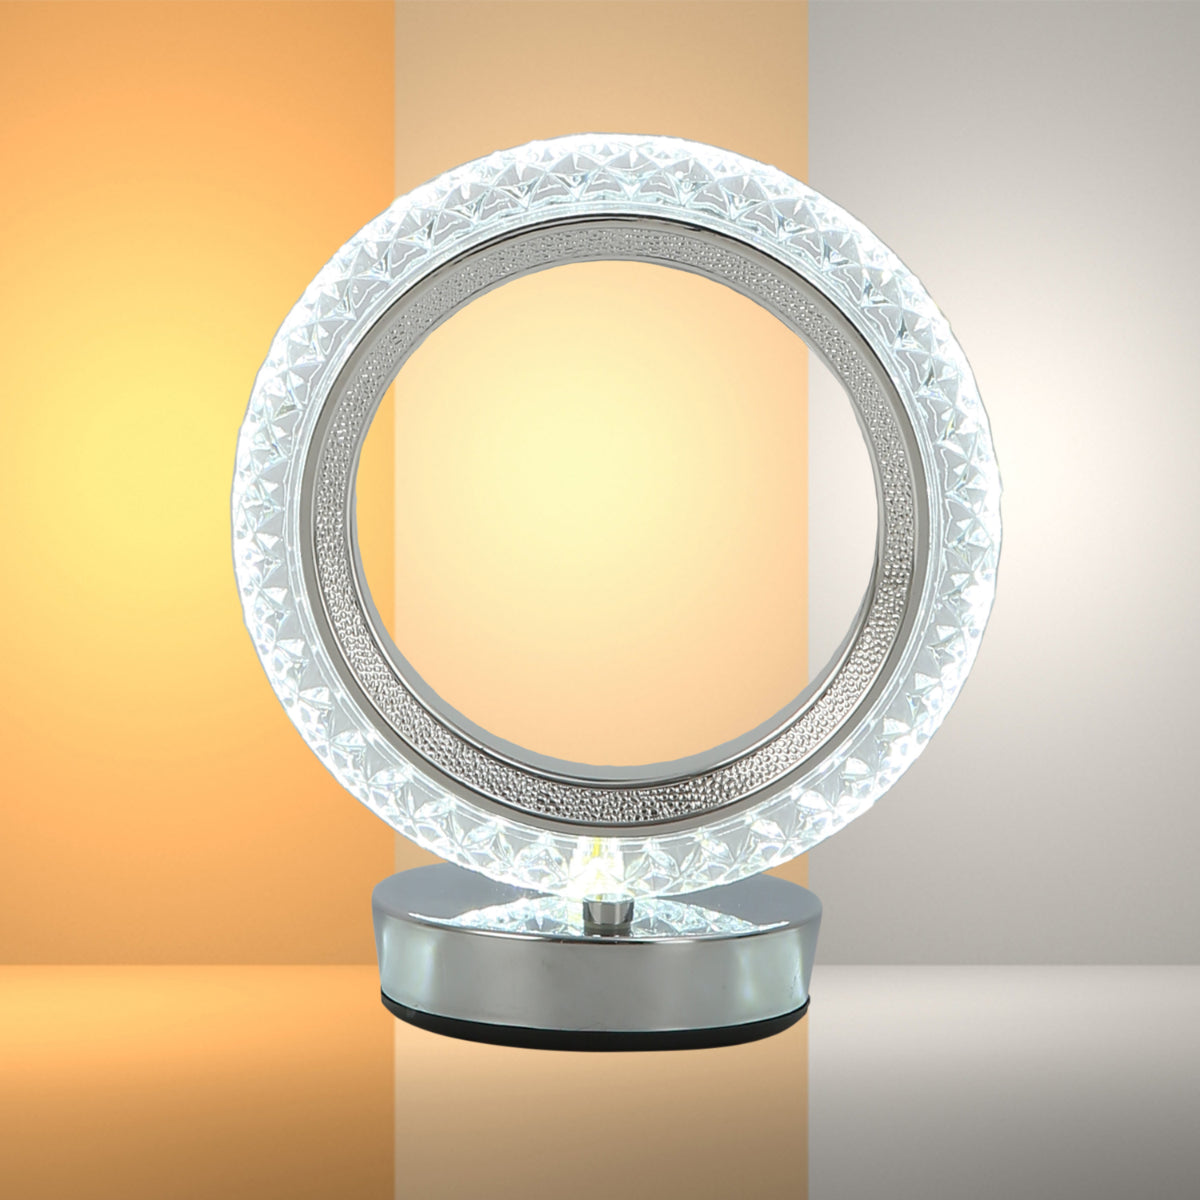 Main image of Halo Glow Ring LED Lamp 130-03730